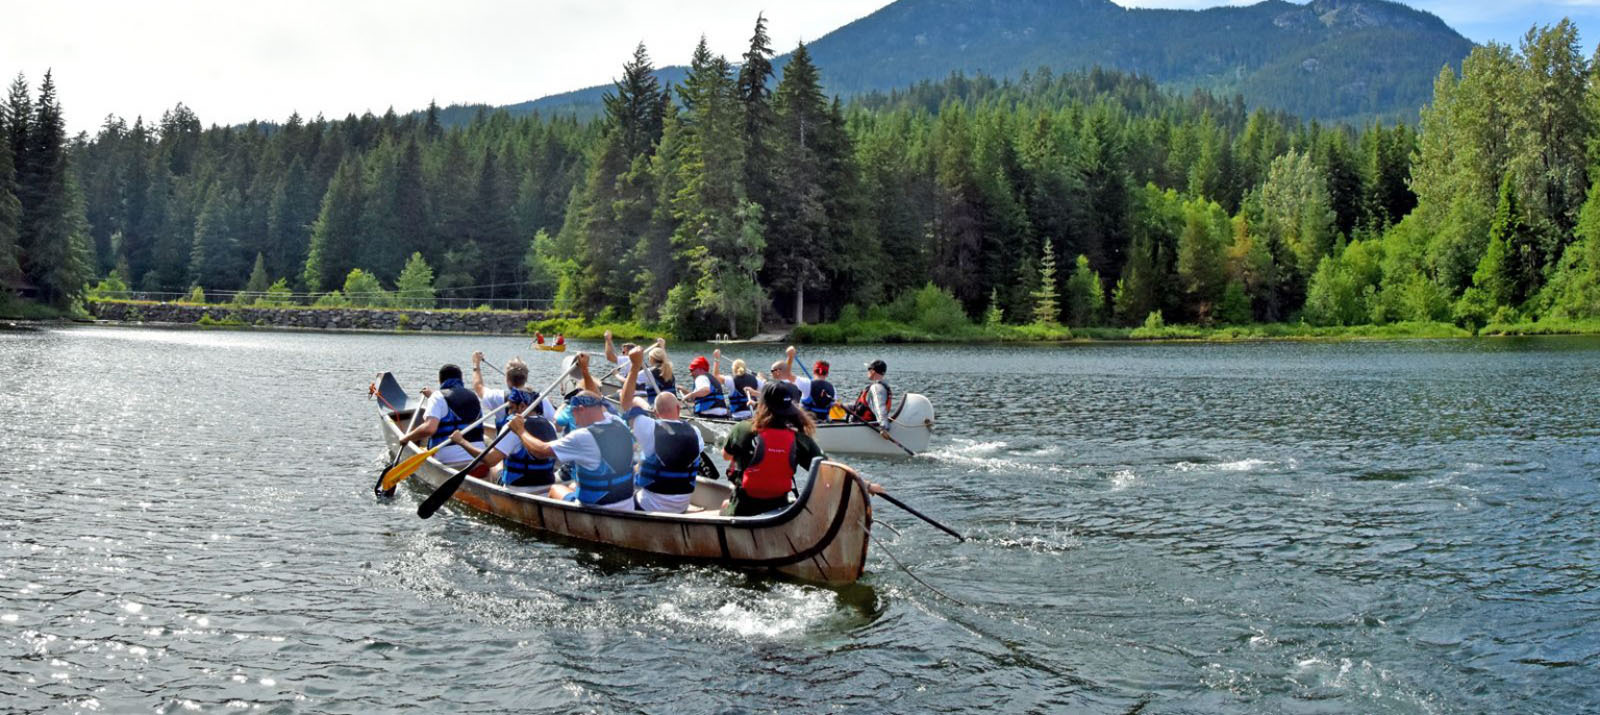 groups paddling voyageur canoes on alta lake